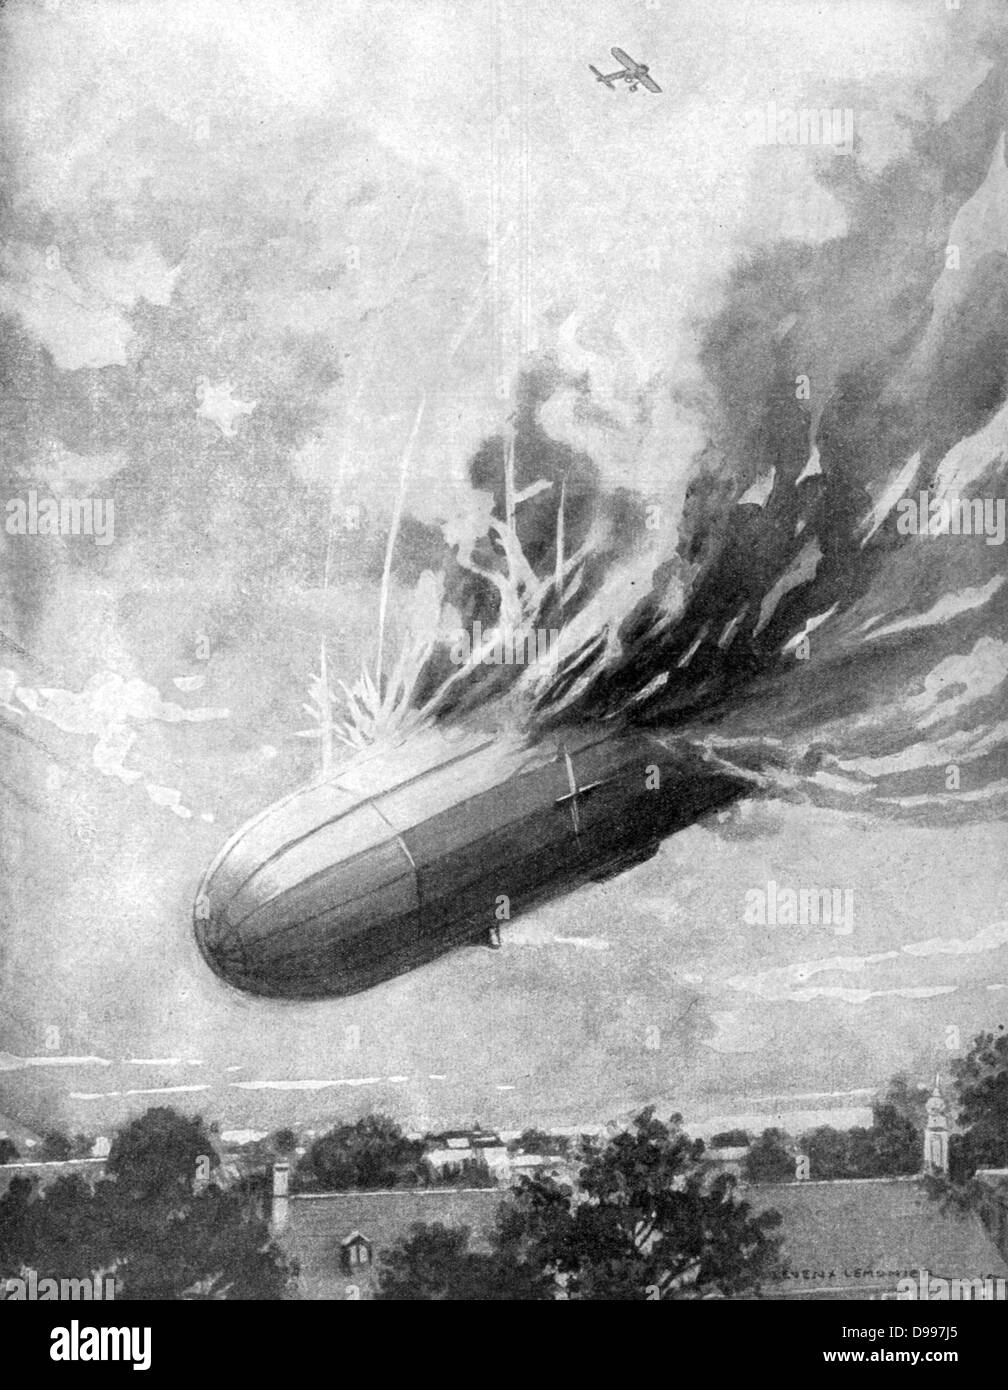 I Guerra Mondiale 1914-1918: Lt R Warneford, RNAF (1891-1915), primo pilota alleato per abbattere un Zeppelin, 7 giugno 1915. Aggiudicati Victoria Cross per sfruttare. Morì in un incidente aereo dieci giorni più tardi. "Le Pays de France, 1915. Aviazione, dirigibile Foto Stock